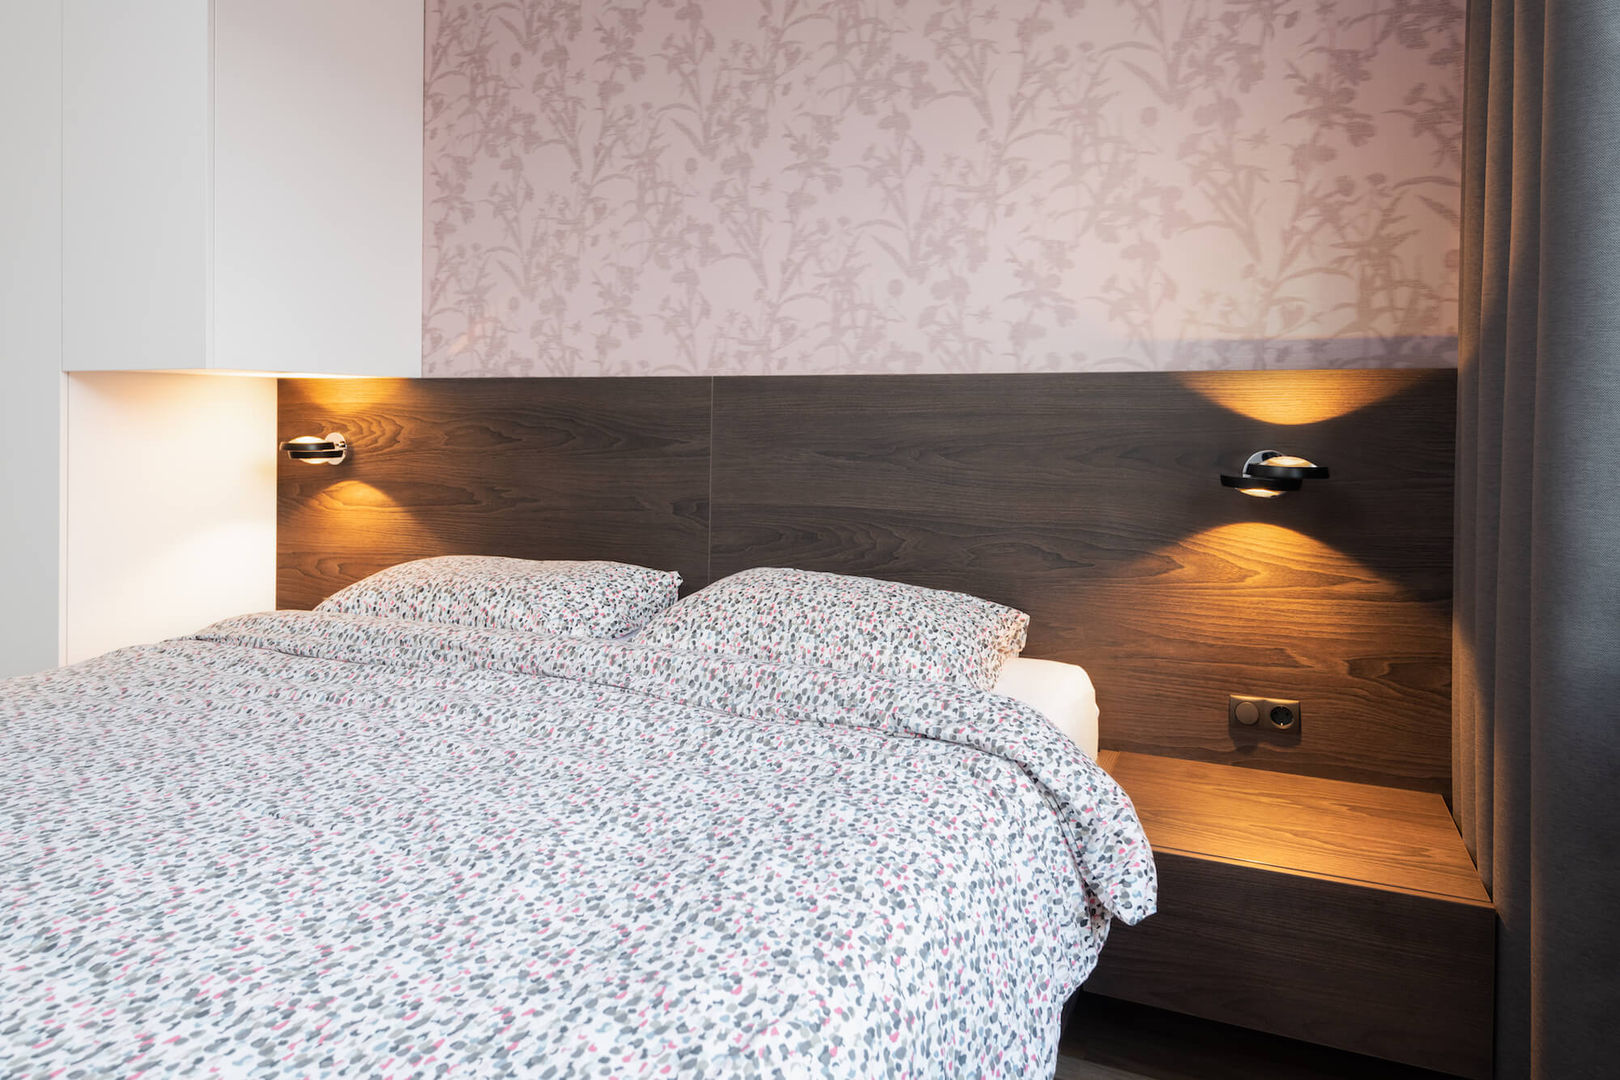 Kleine slaapkamer met kast boven het bed, De Suite De Suite غرف نوم صغيرة